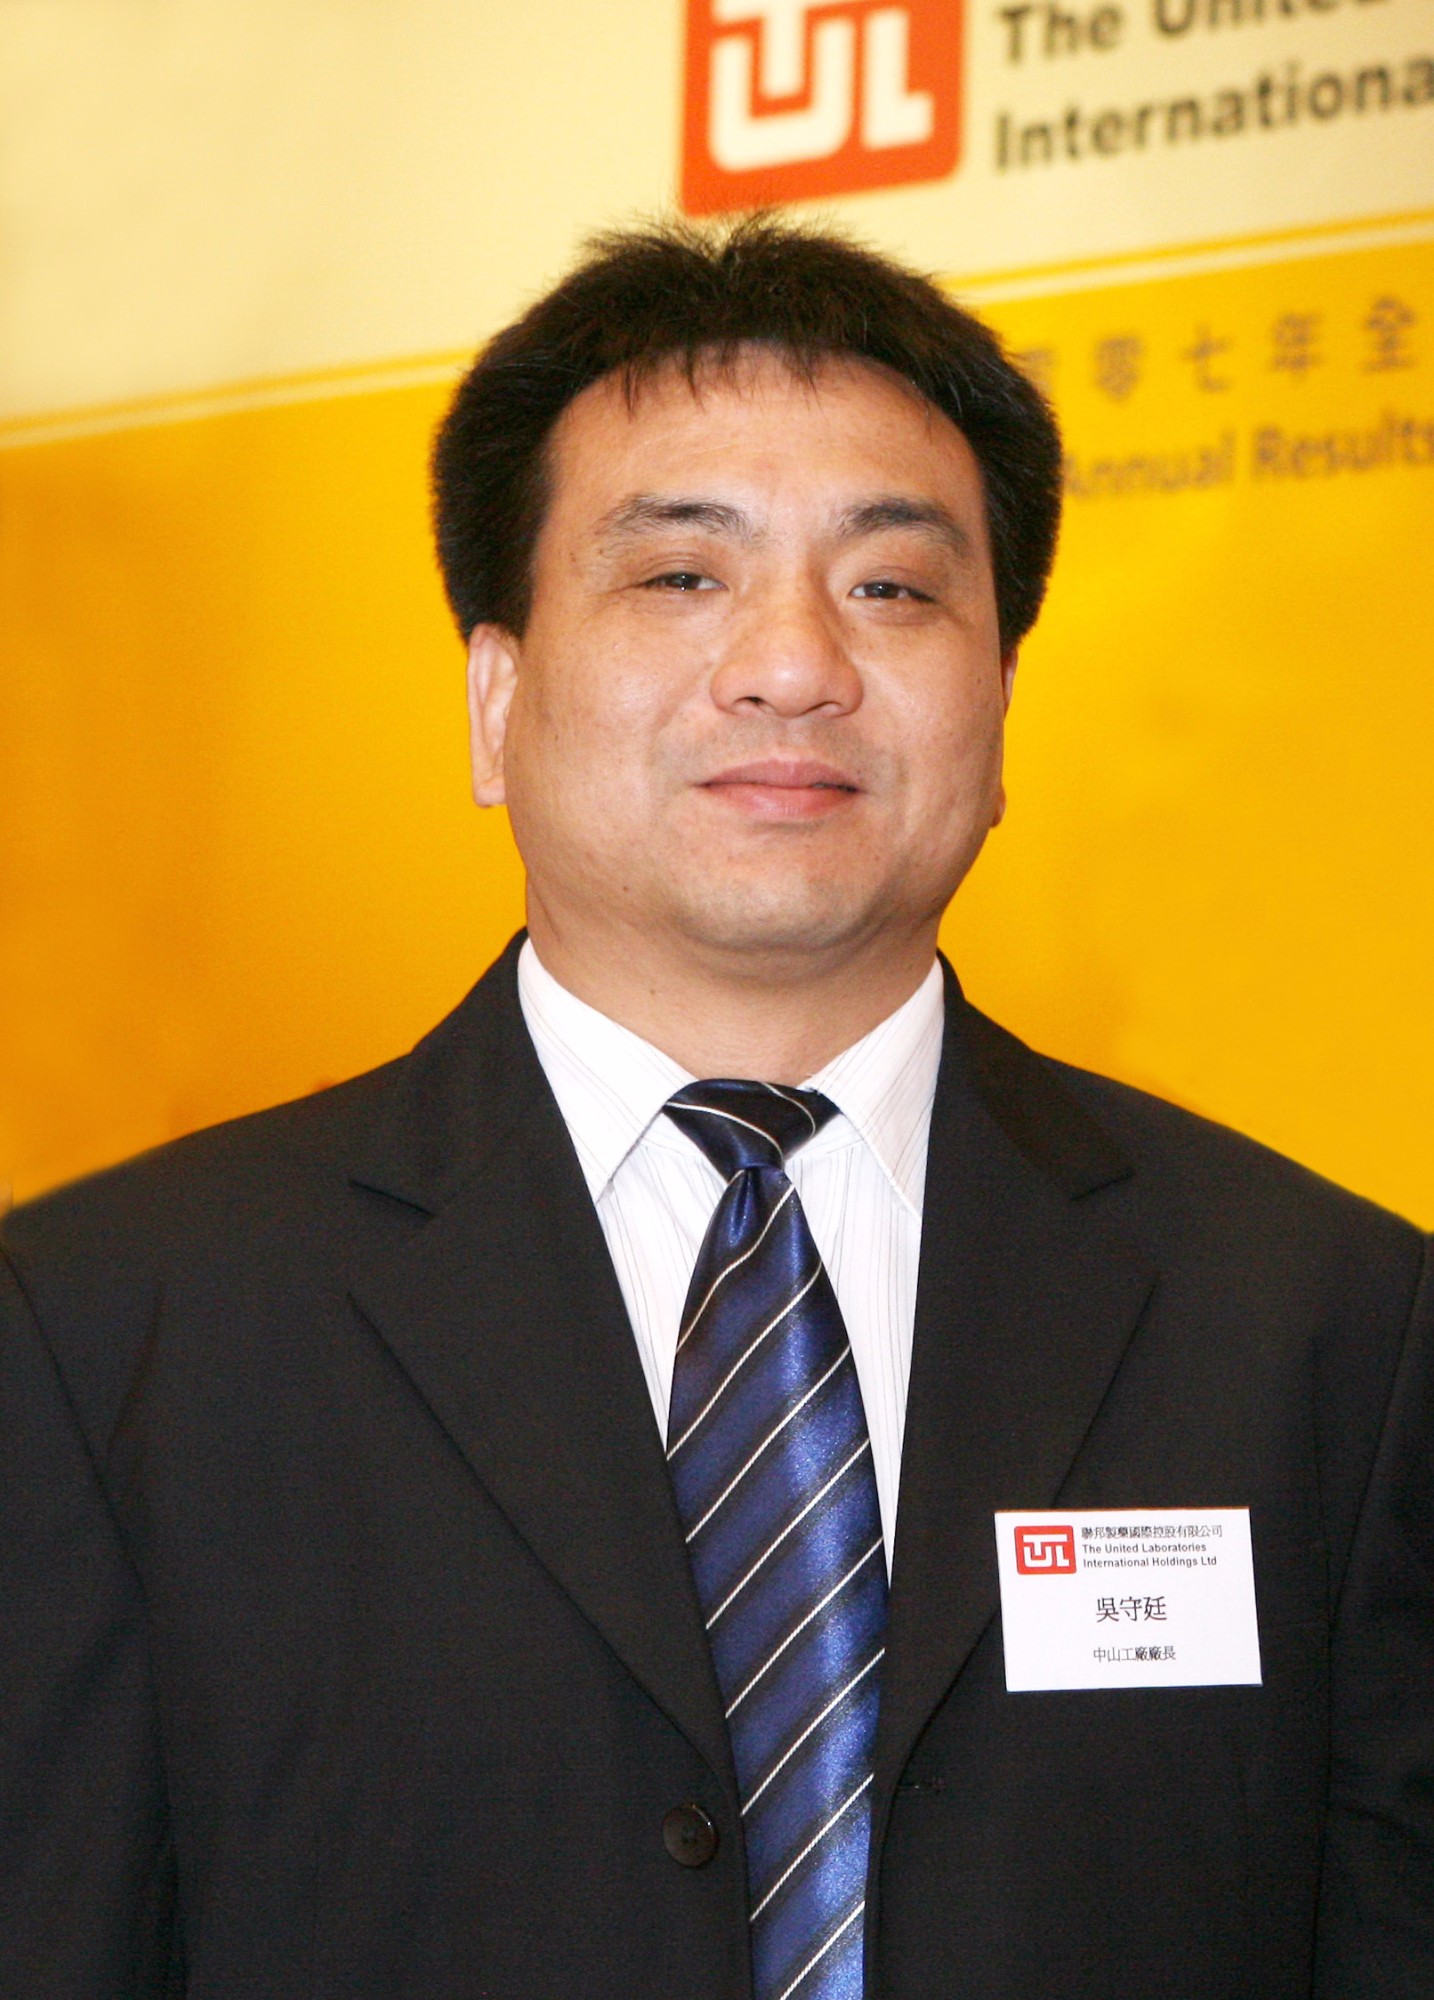 Mr. Wu Shou Ting